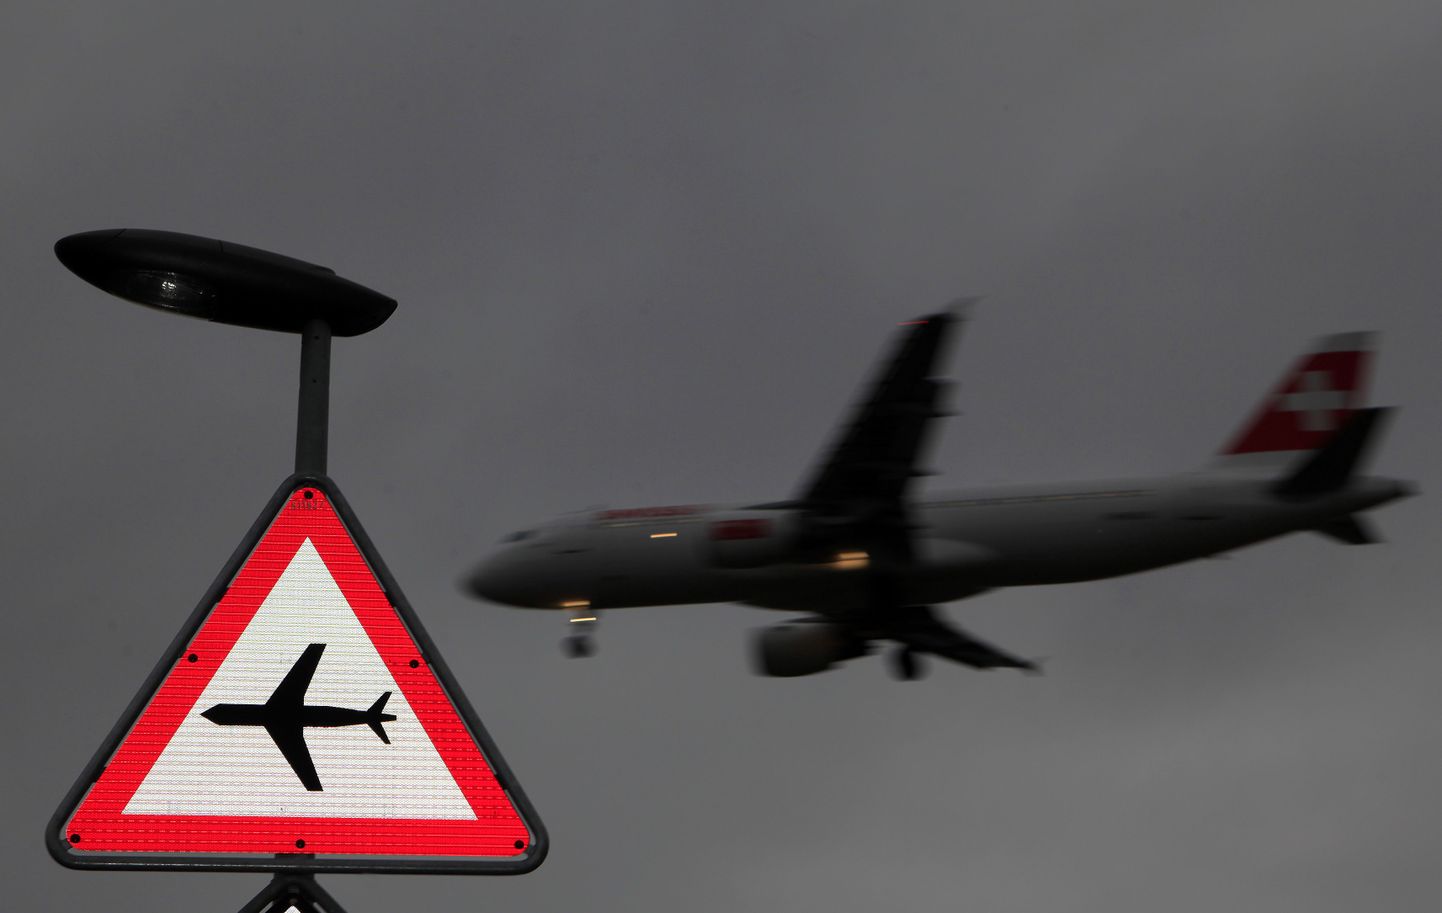 Lennuvälja lähedusele viitav liiklusmärk Genfis.